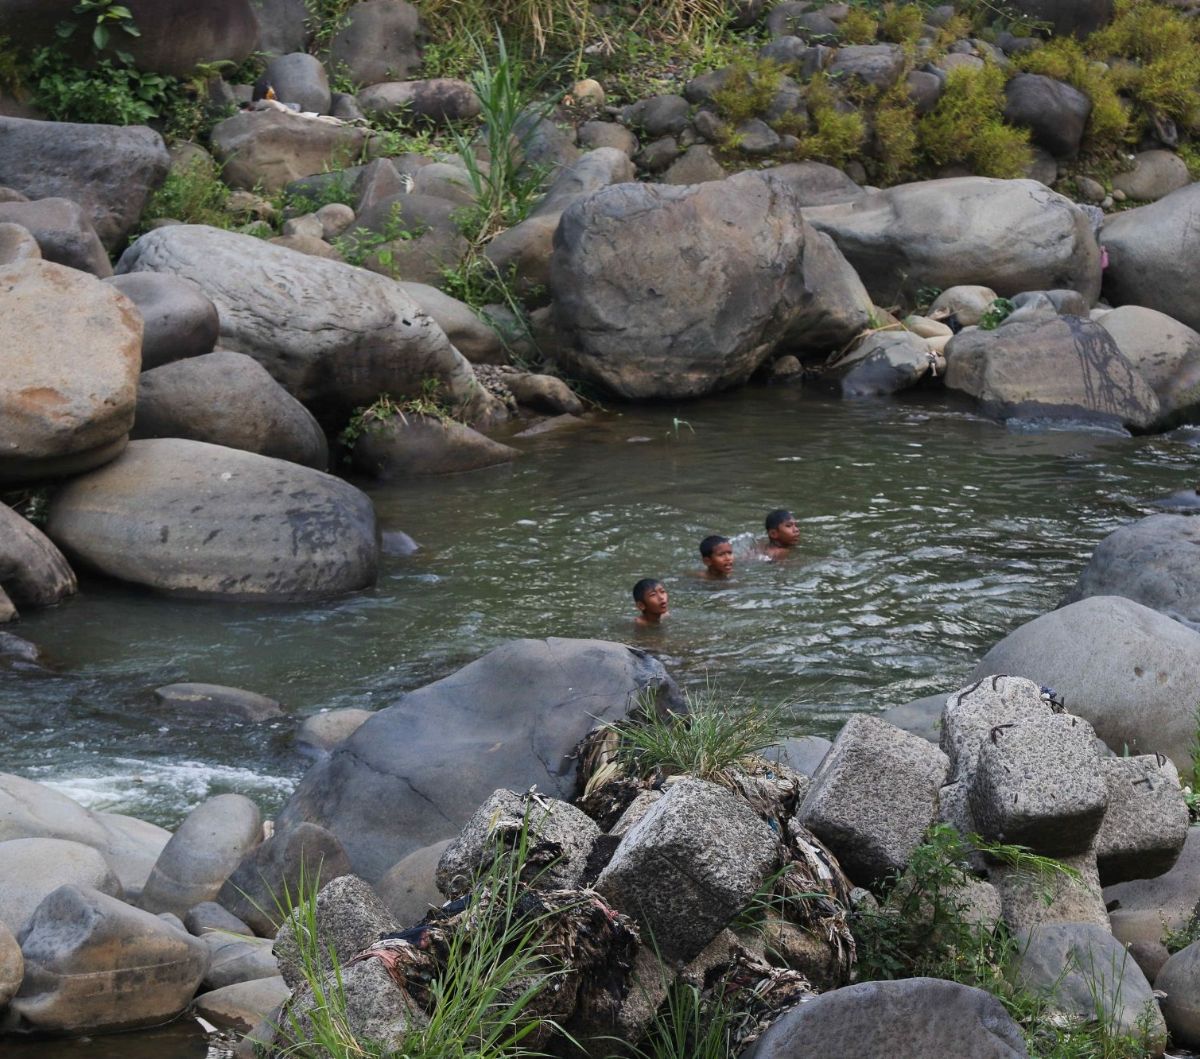 Selain itu, penyusutan debit air di Bendungan Katulampa ini juga dimanfaatkan oleh anak-anak sekitar untuk berenang dan bermain air karena permukaannya yang dangkal.